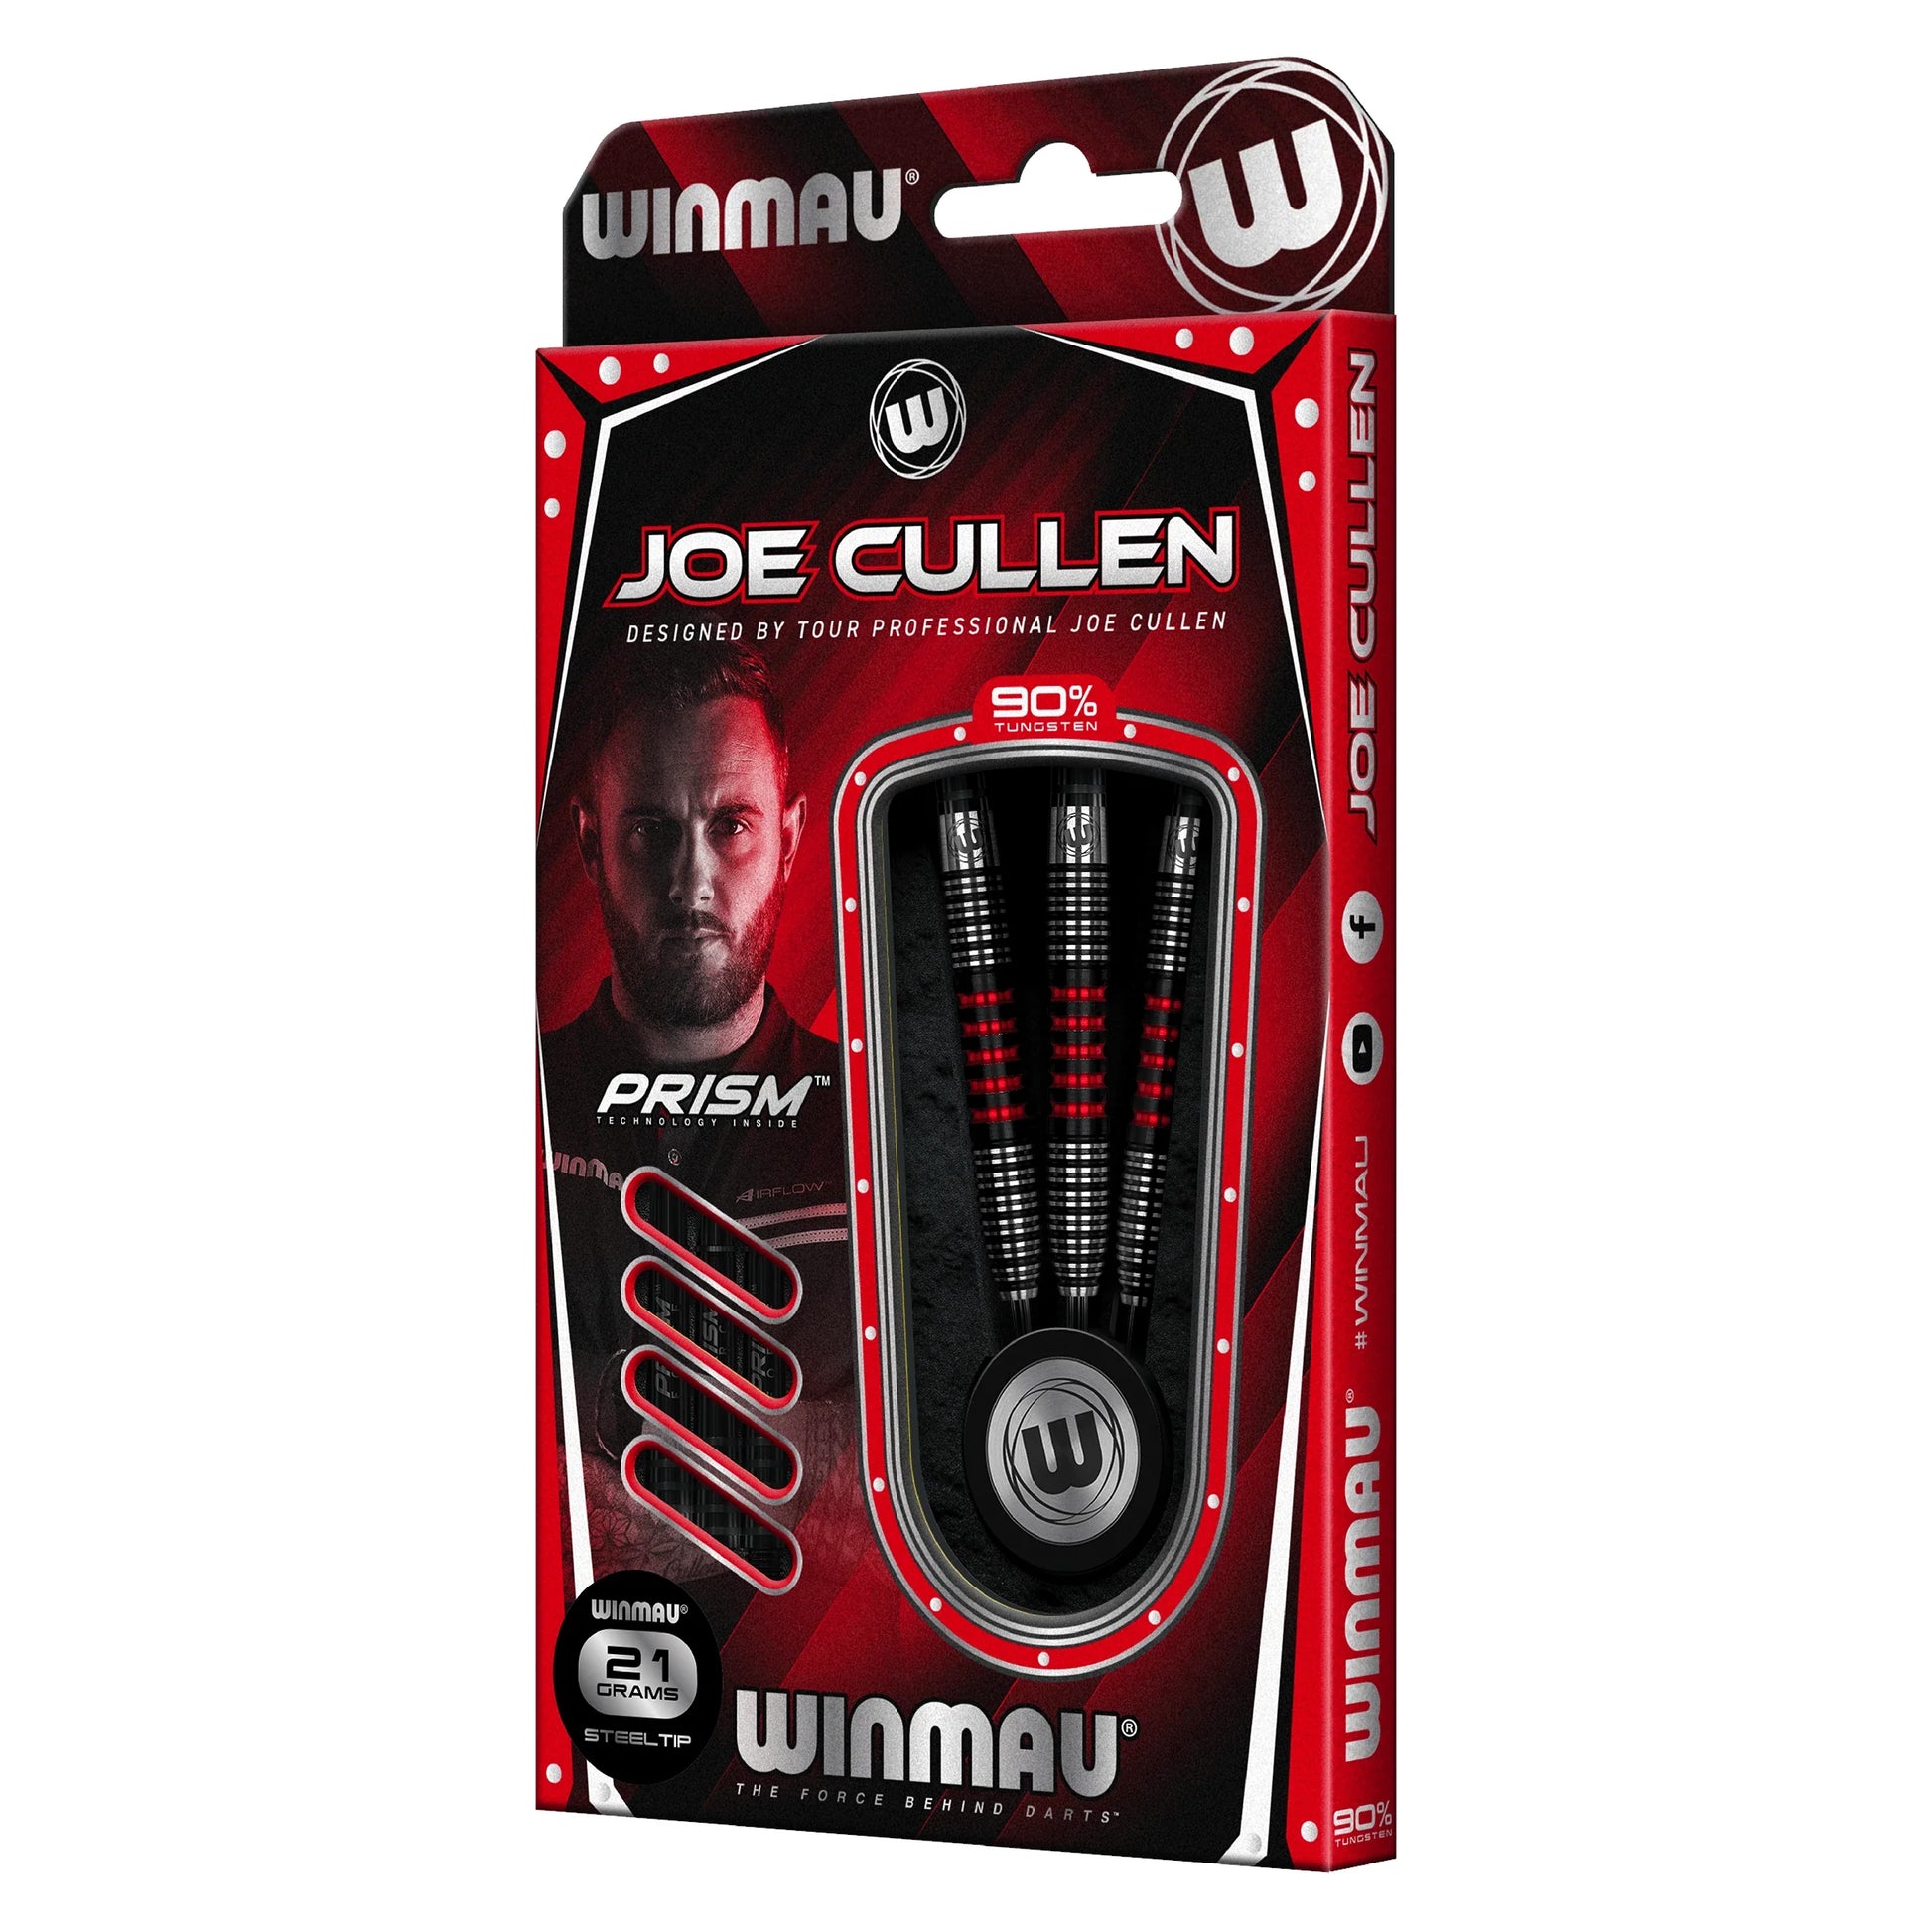 Winmau Joe Cullen 24g Special Edition Darts